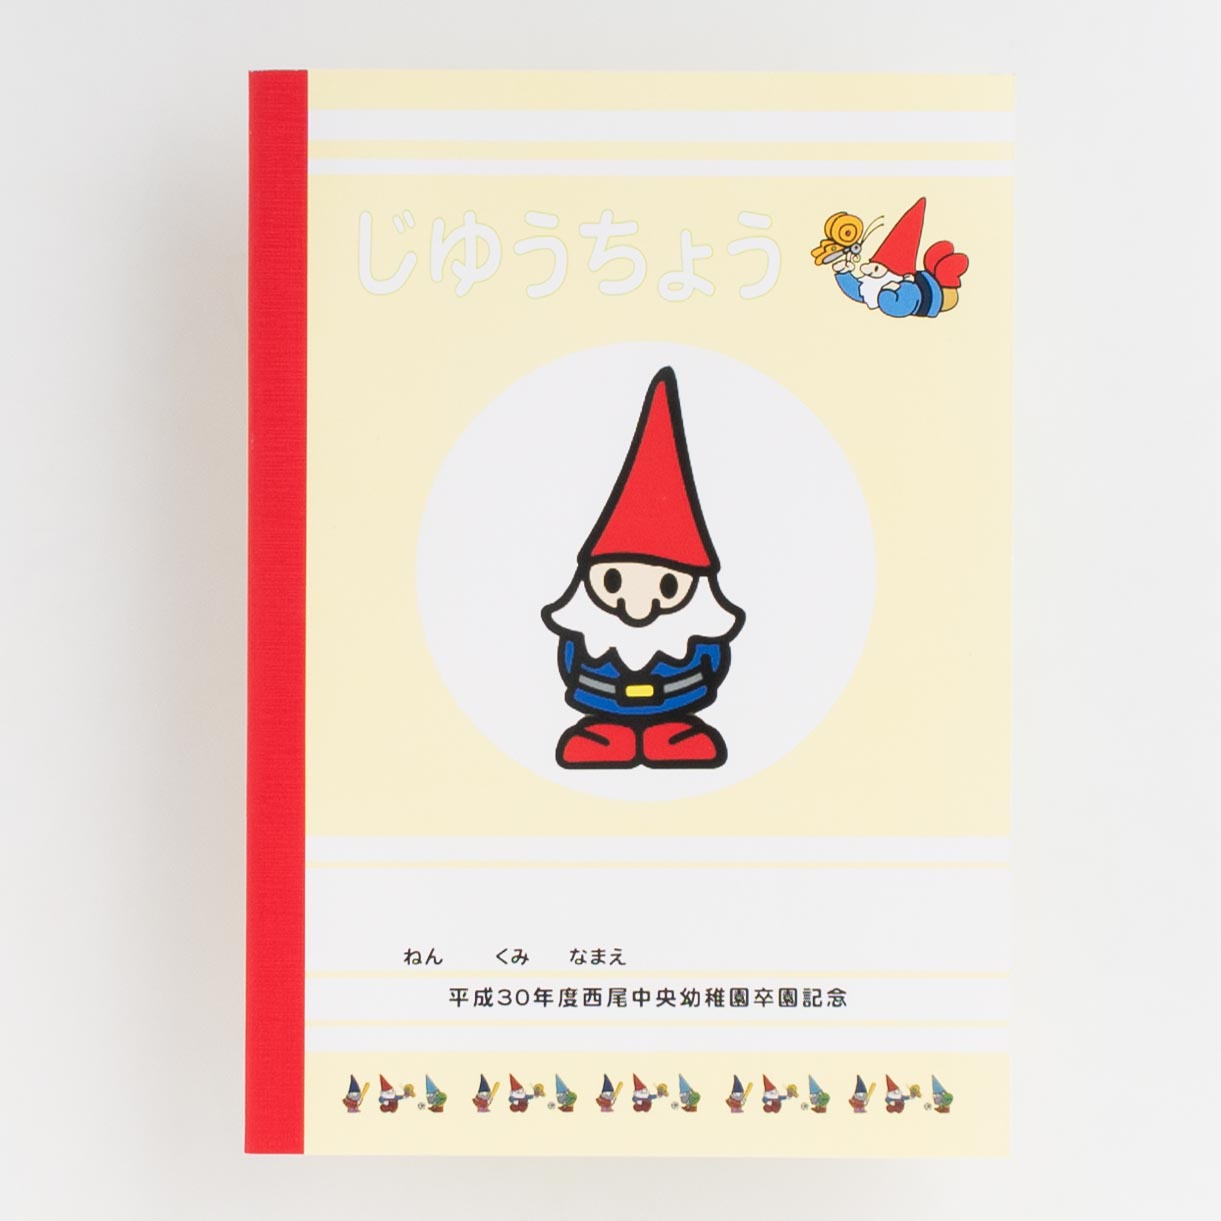 「岡田  由紀 様」製作のオリジナルノート